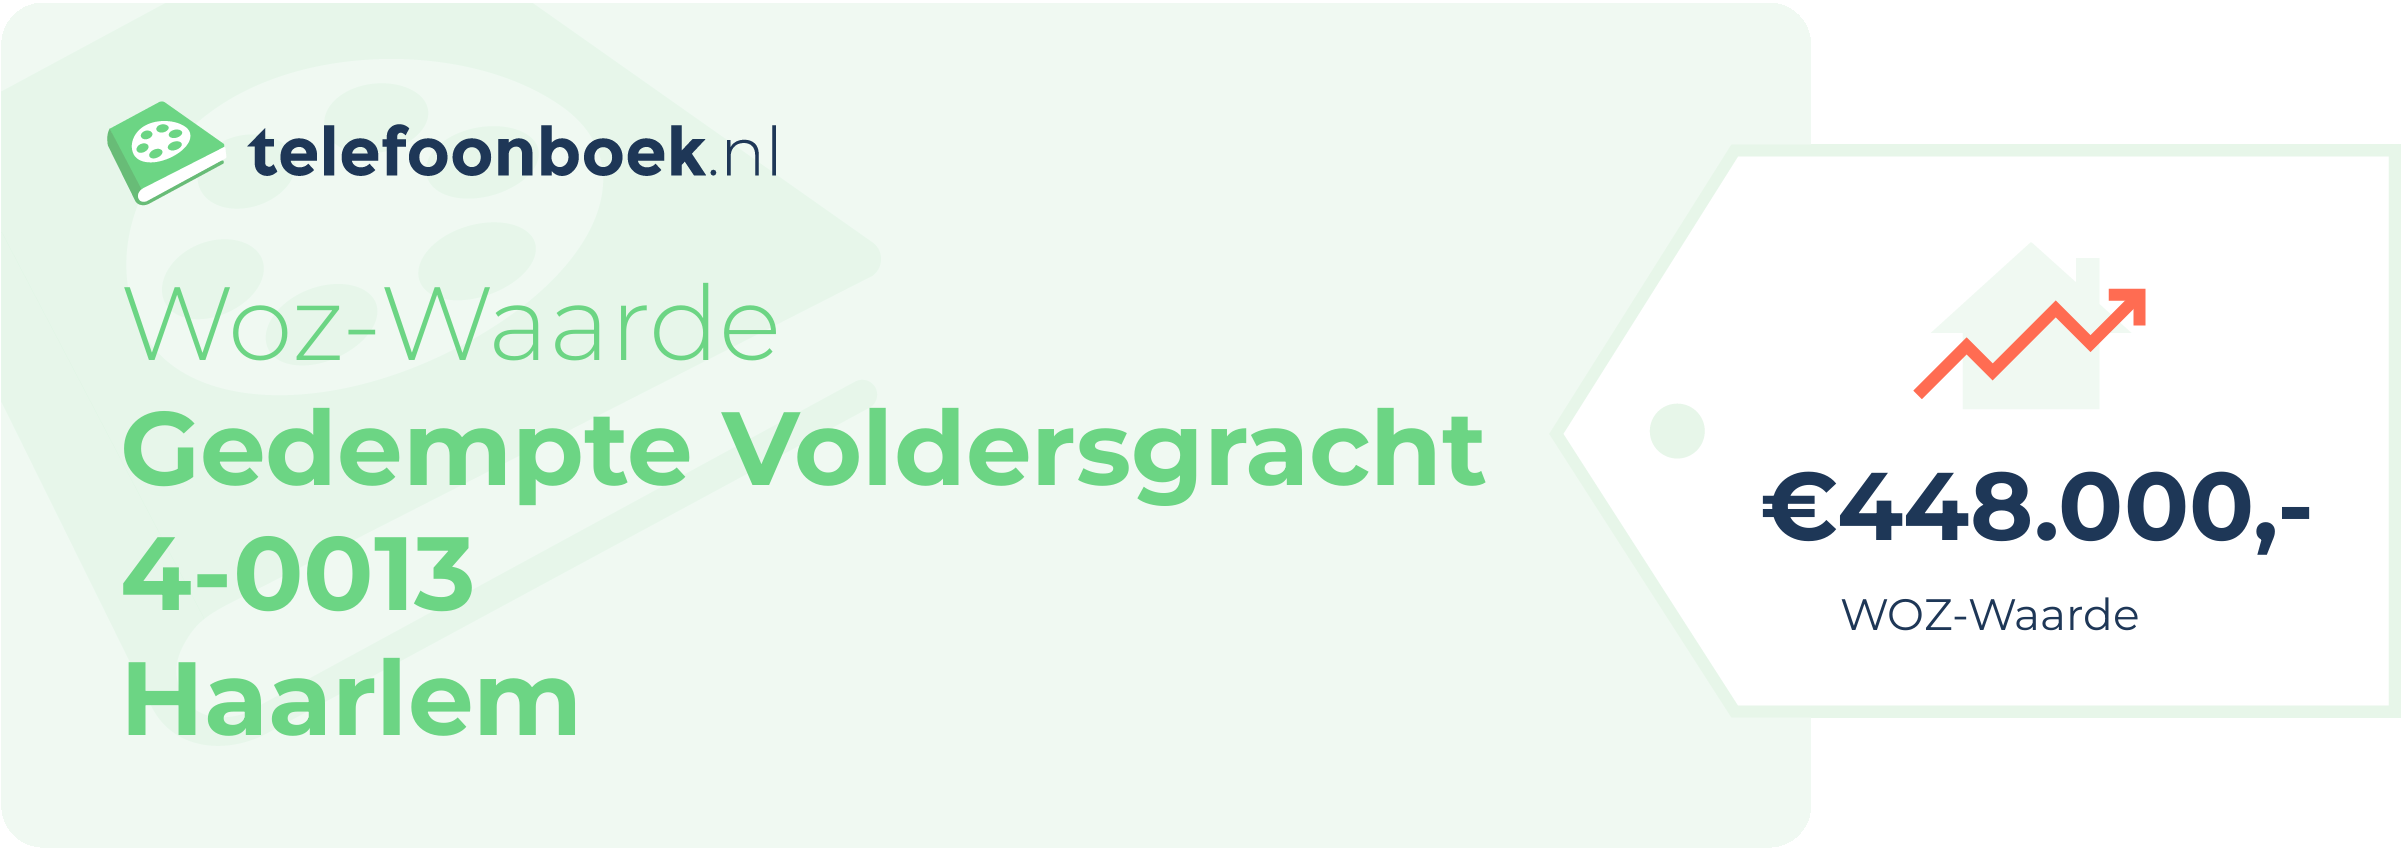 WOZ-waarde Gedempte Voldersgracht 4-0013 Haarlem